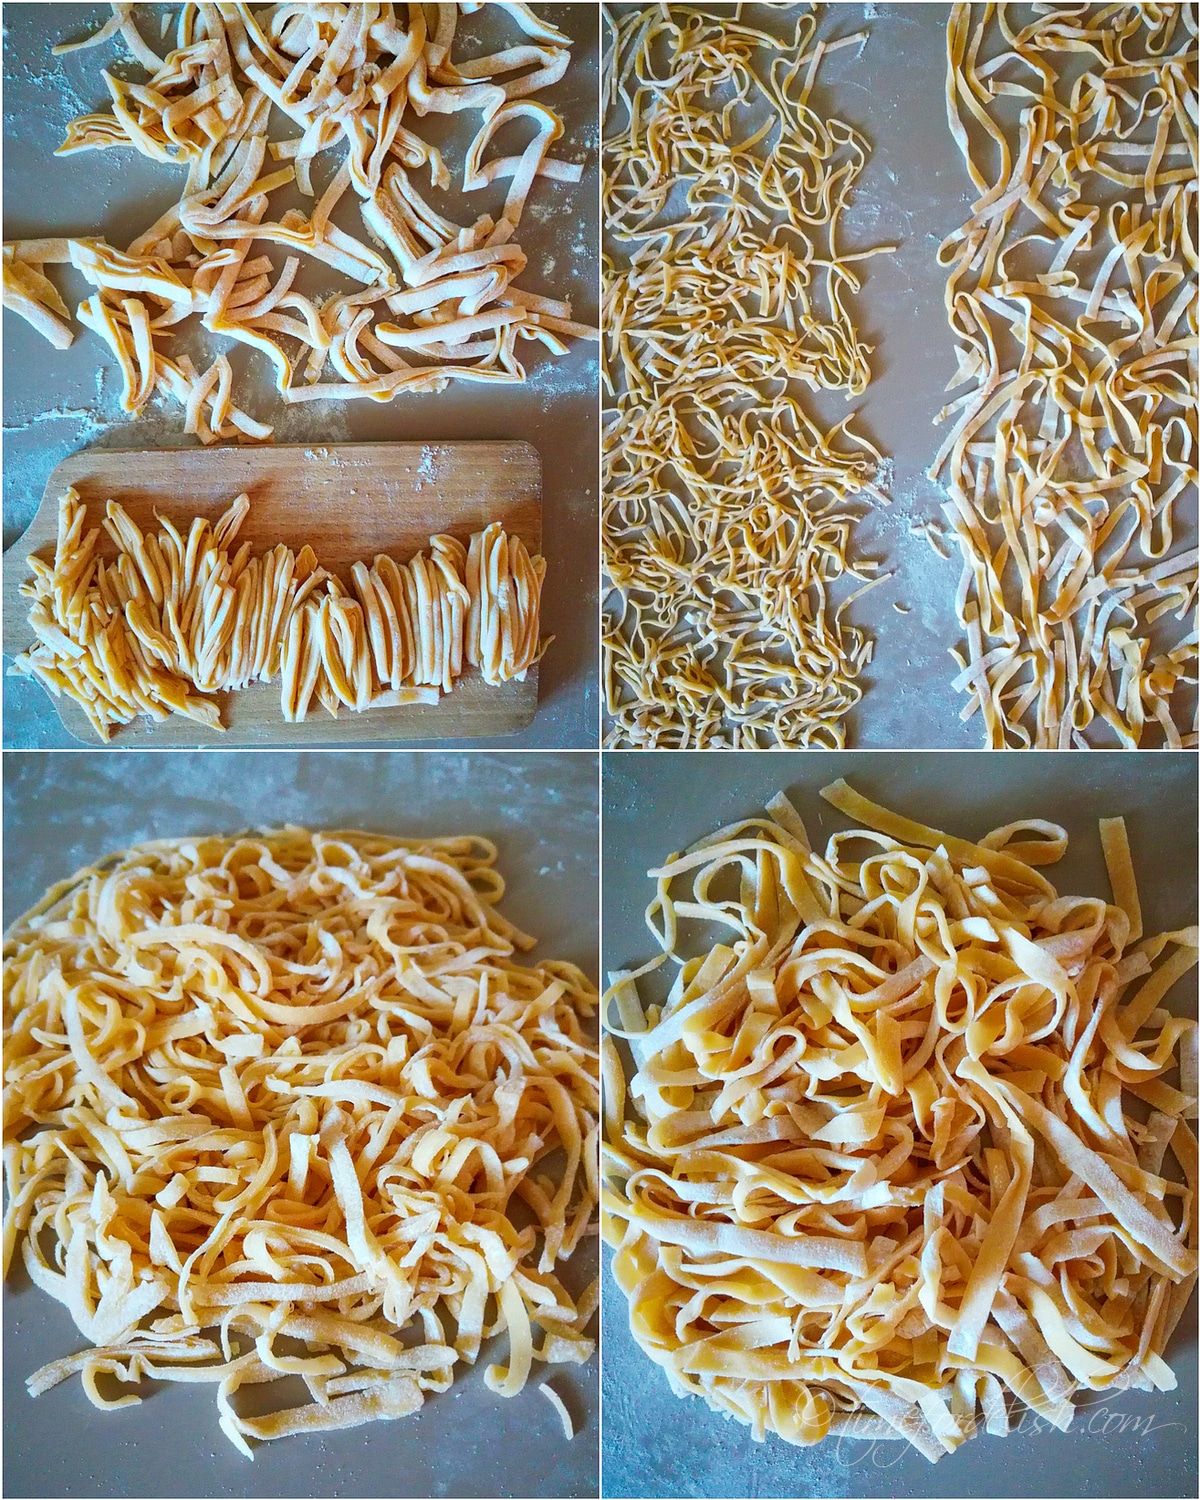 cut the noodles